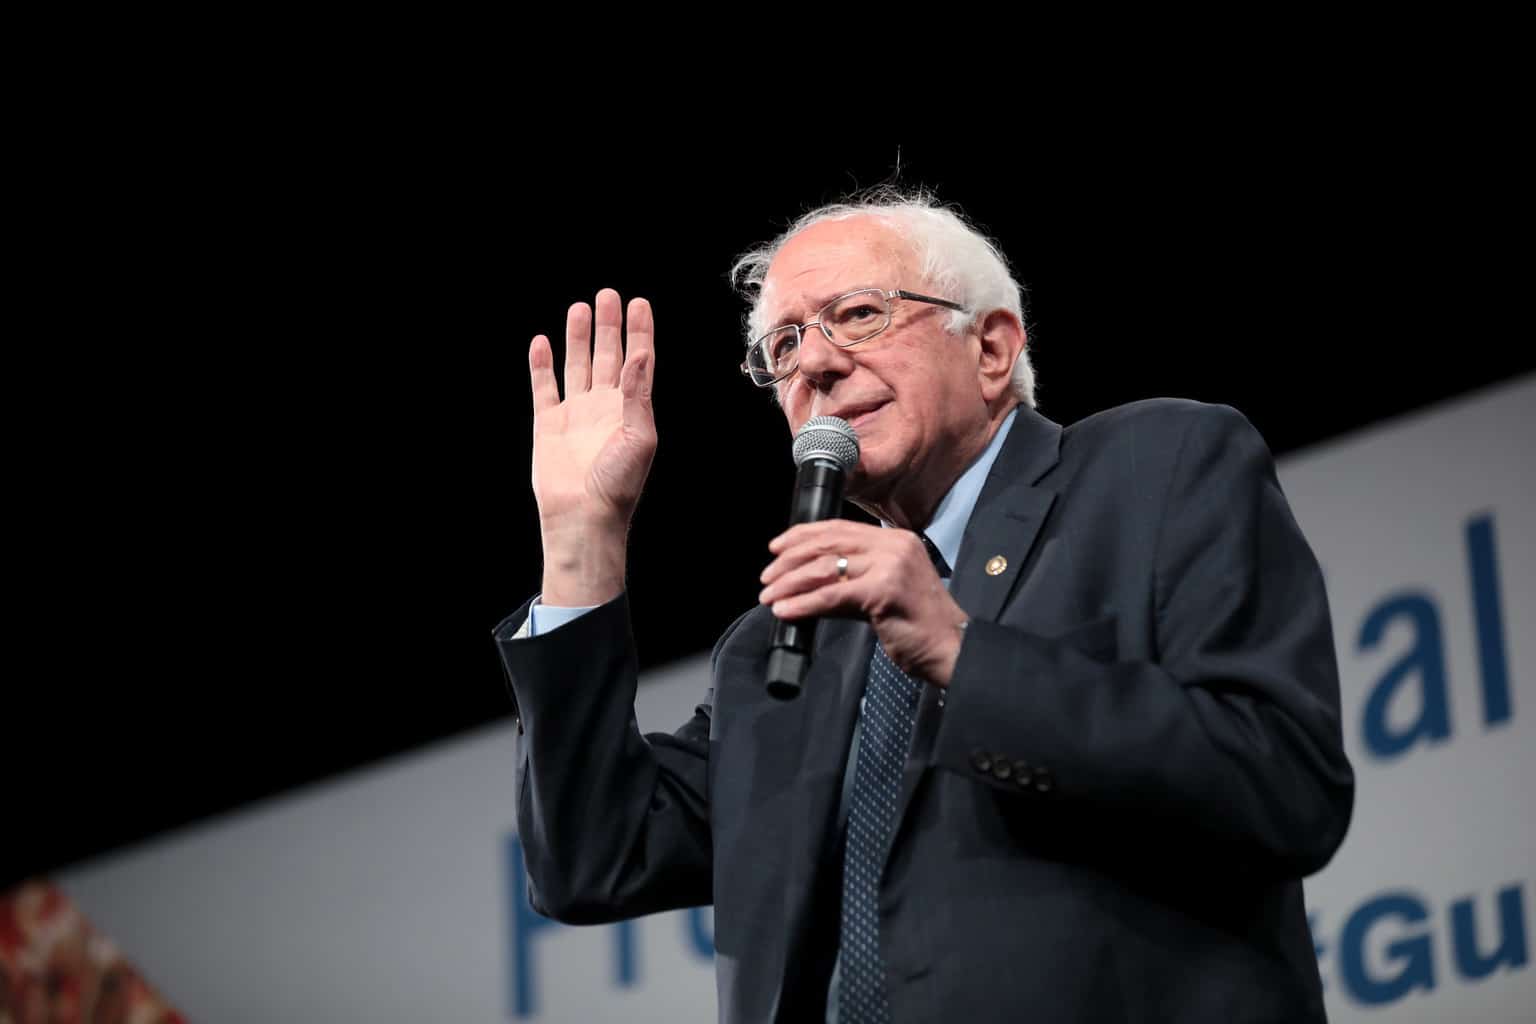 Bernie Sanders waves to crowd